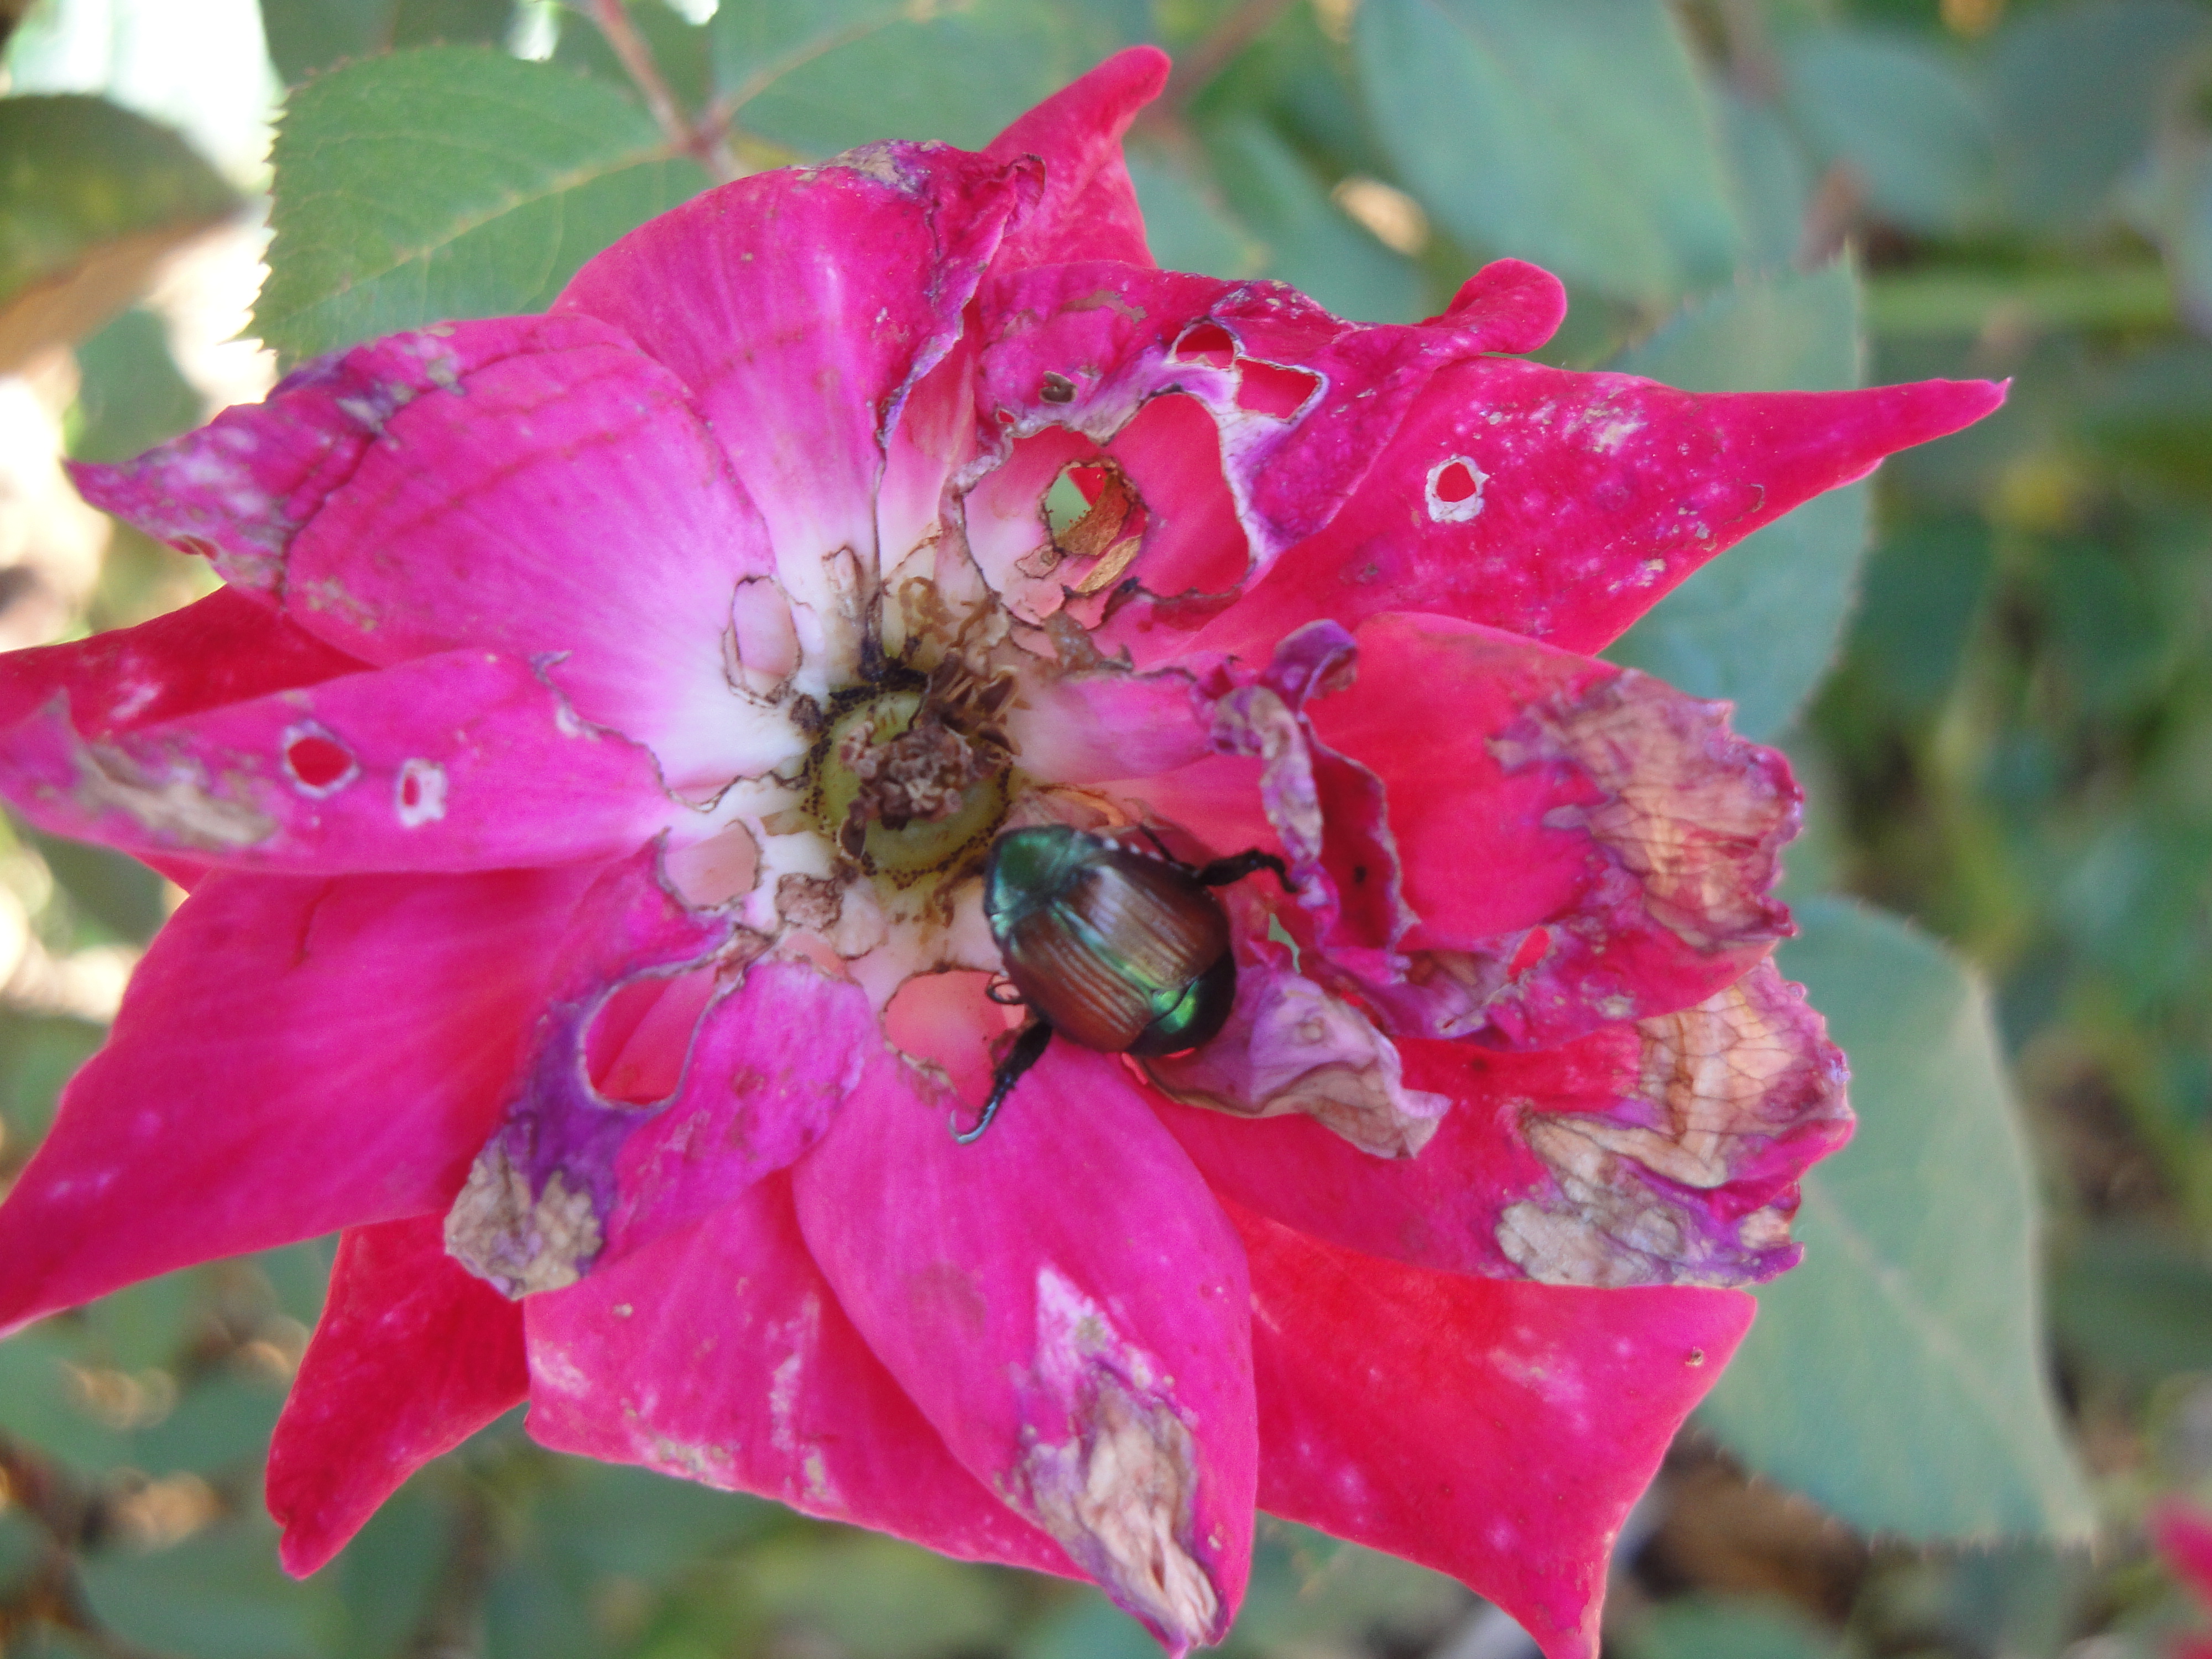 Japanese beetle on rose